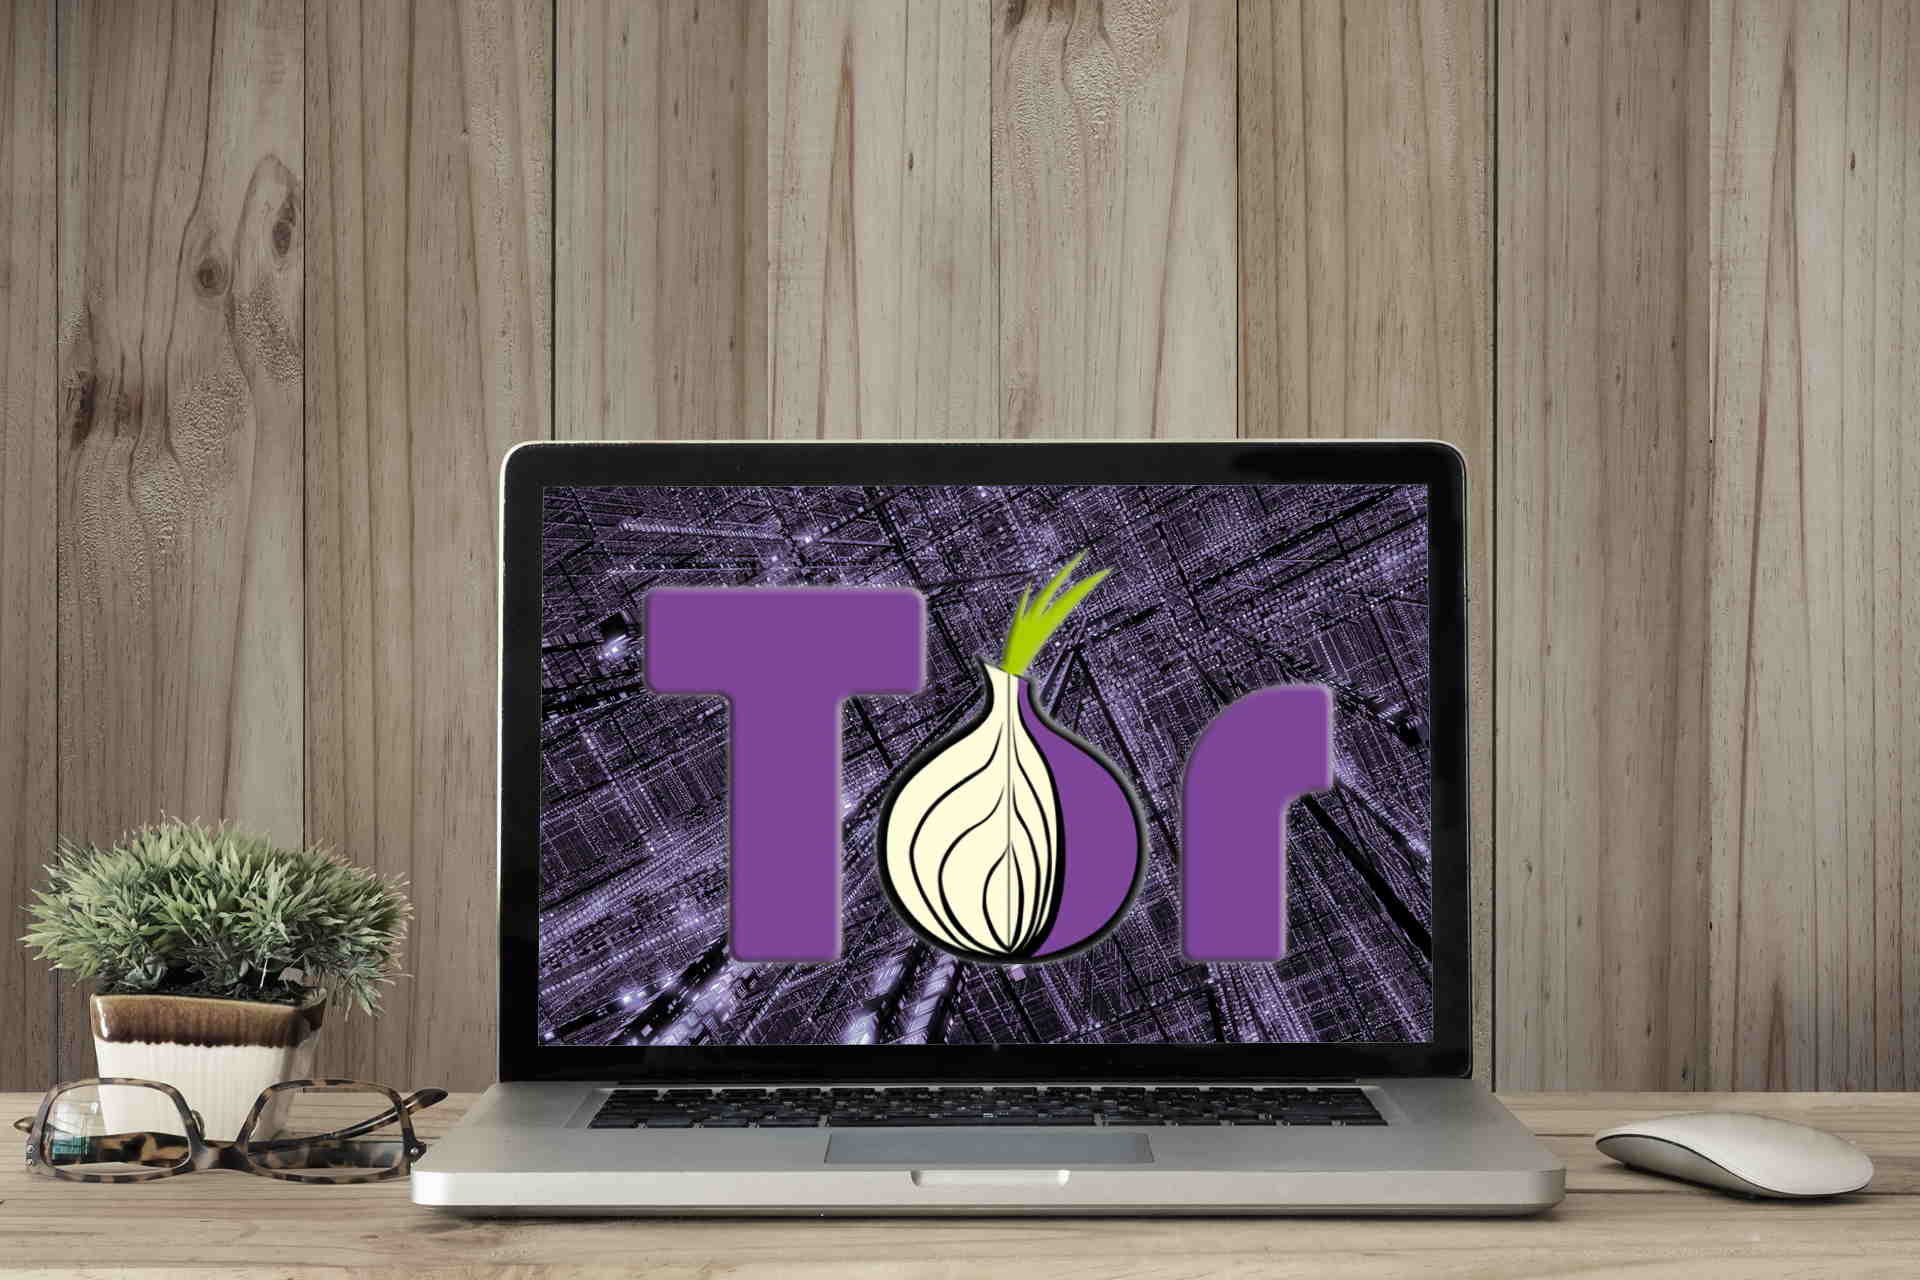 Tor browser is already running hyrda вход скачать фото приколы про коноплю